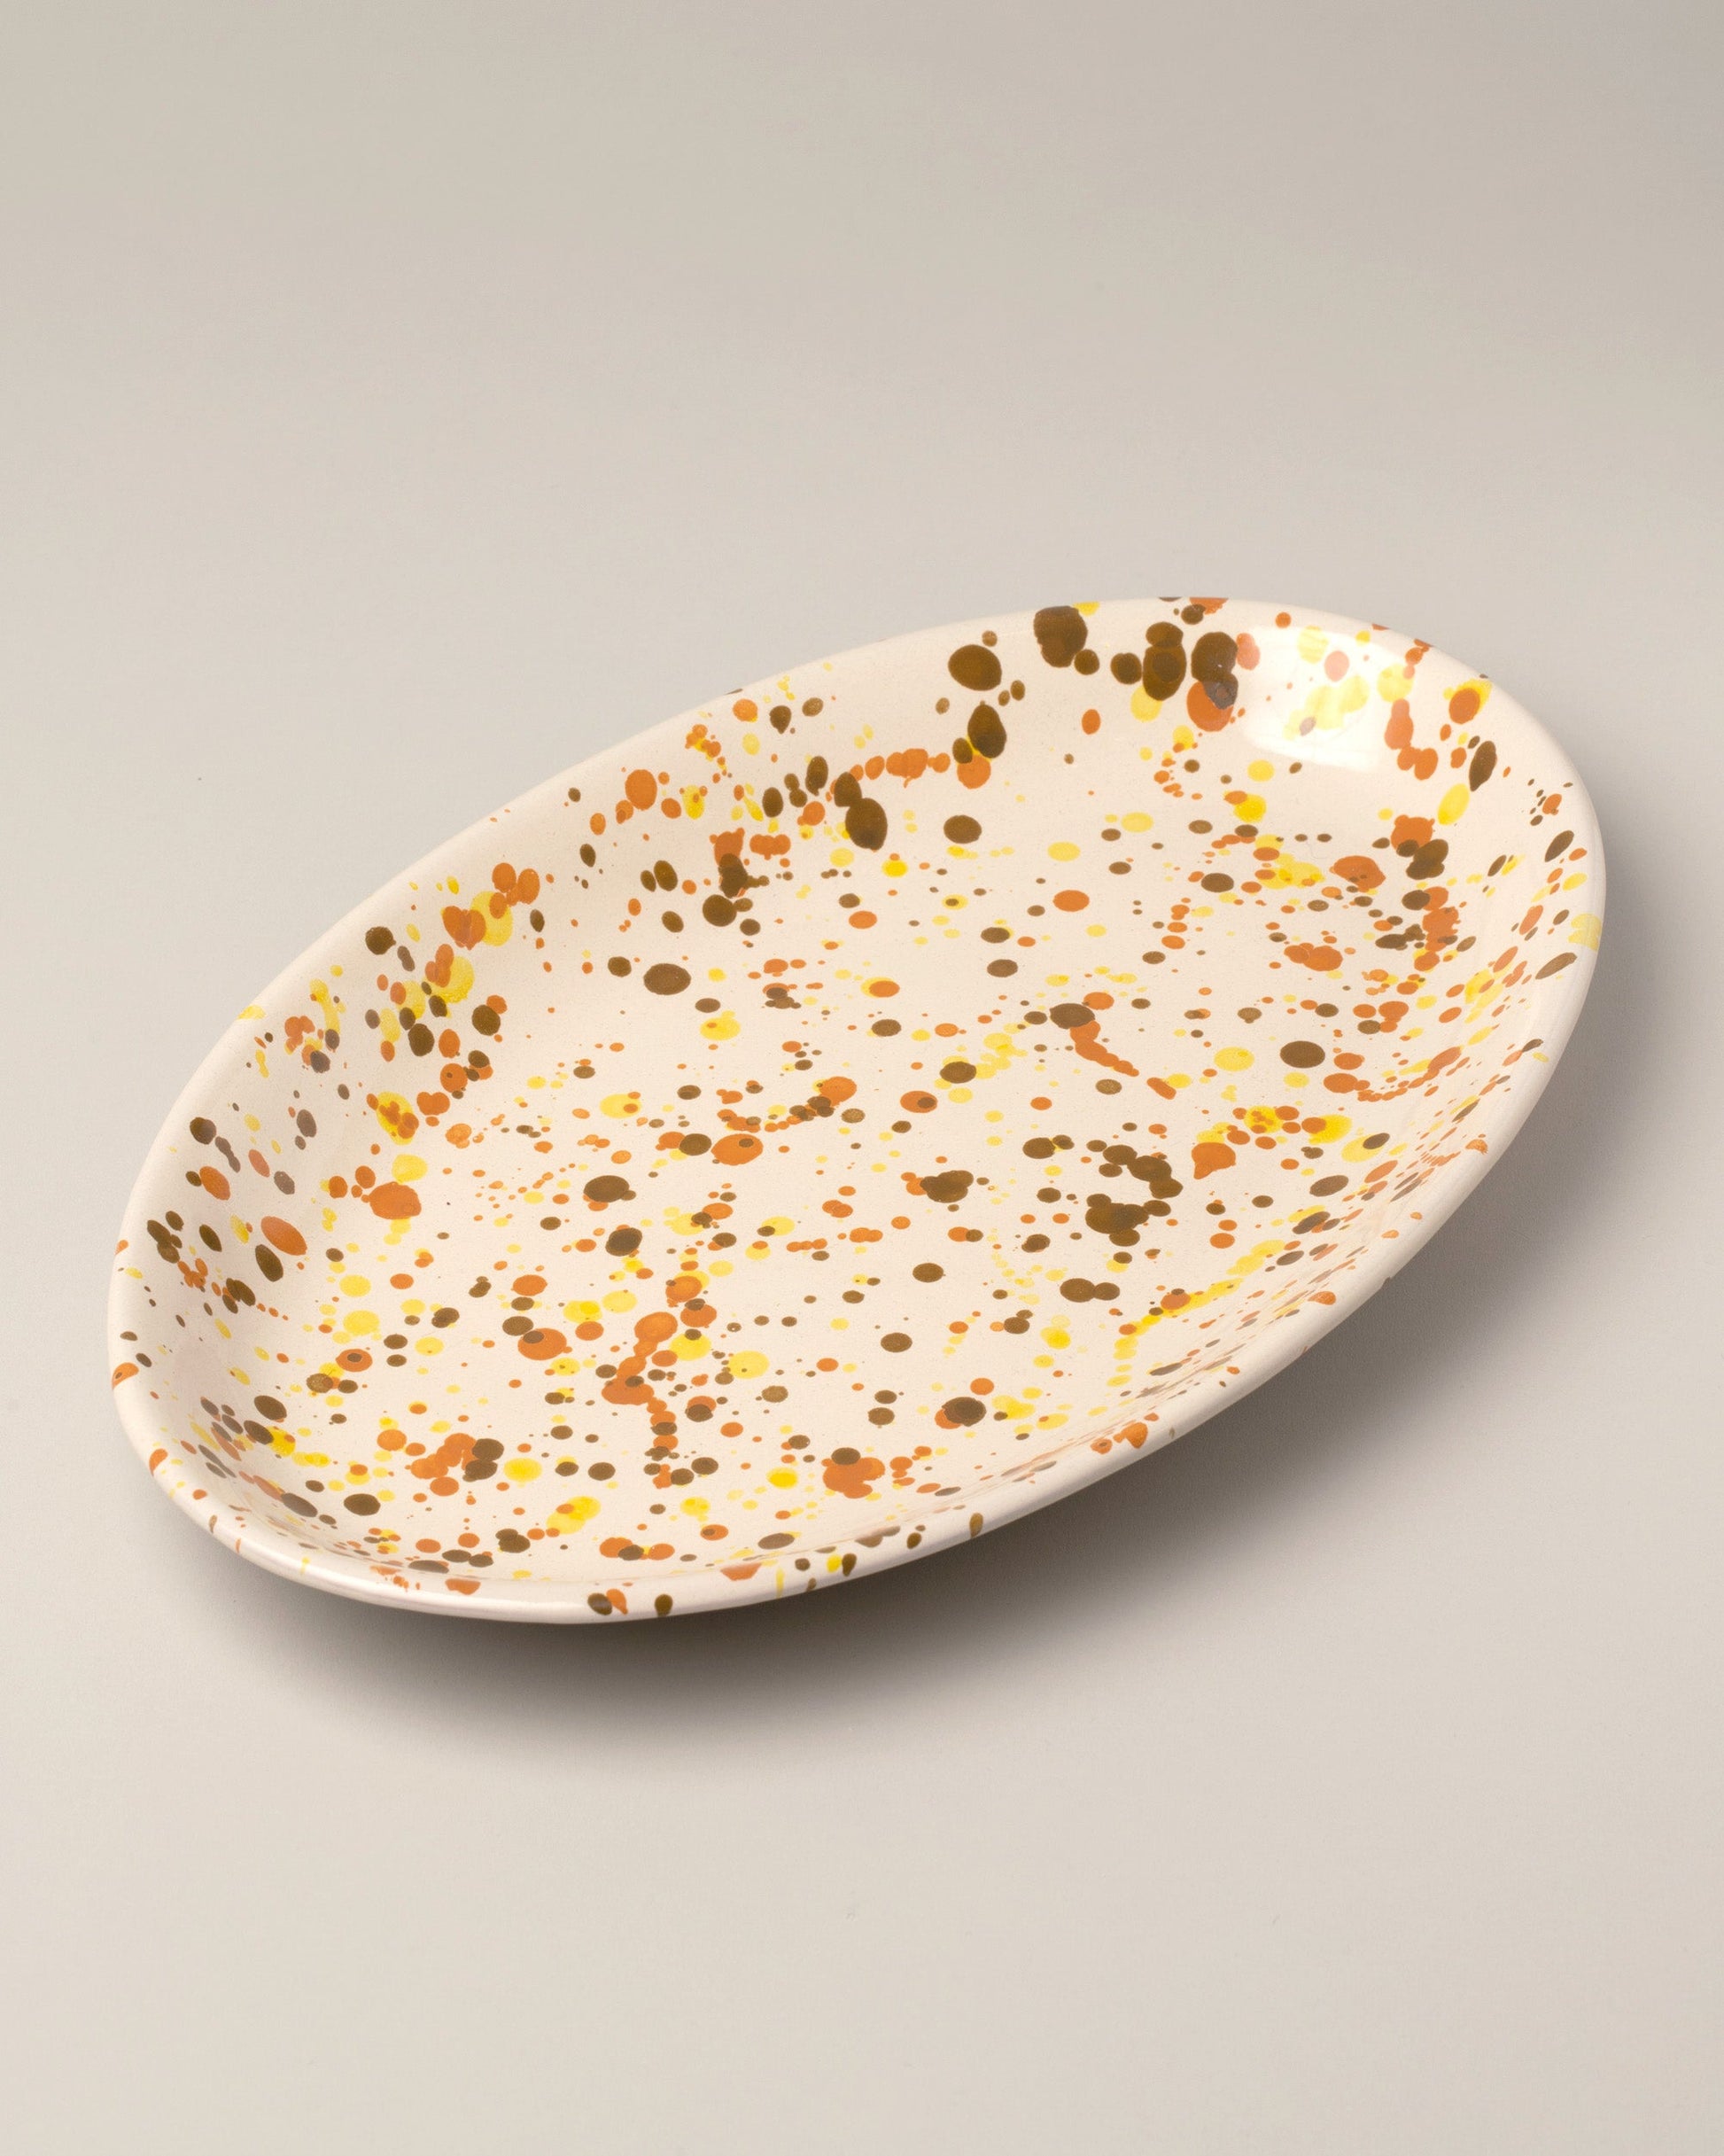 La Ceramica Vincenzo Del Monaco Soft Drops Oval Serving Dish on light color background.